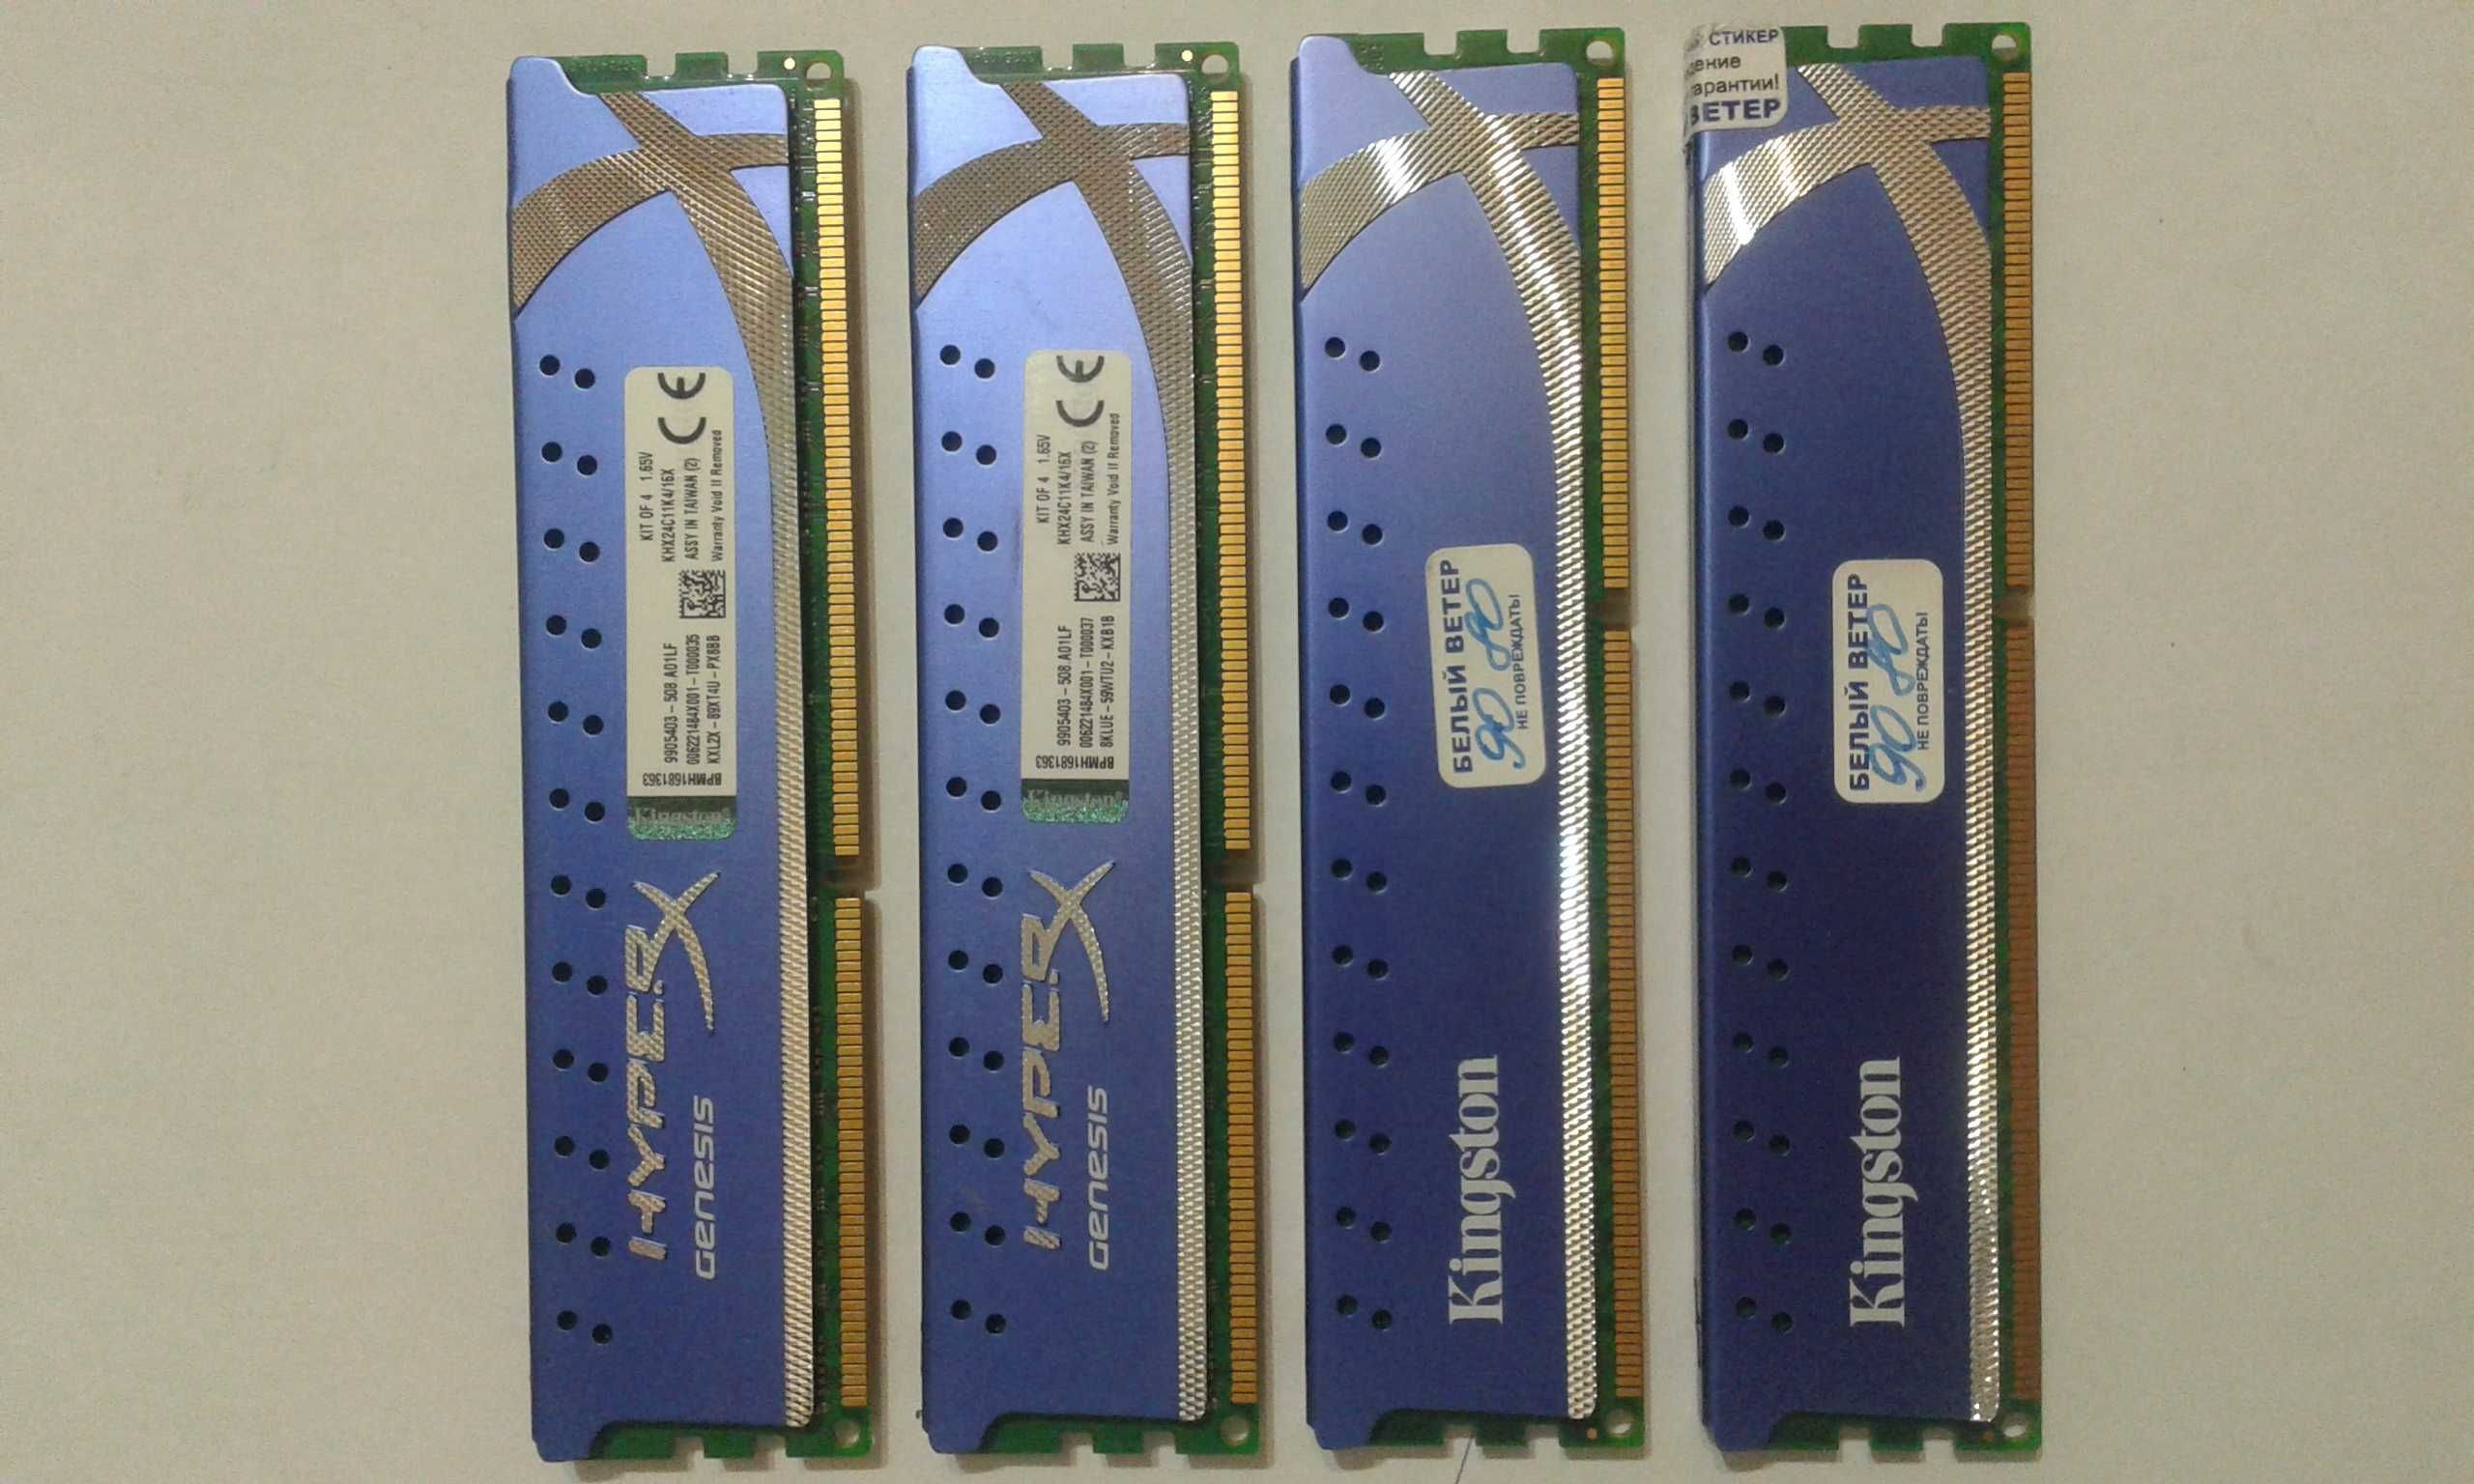 Продам ОЗУ Kingston KHX24C11K416X  16GB (4x4GB) DDR3